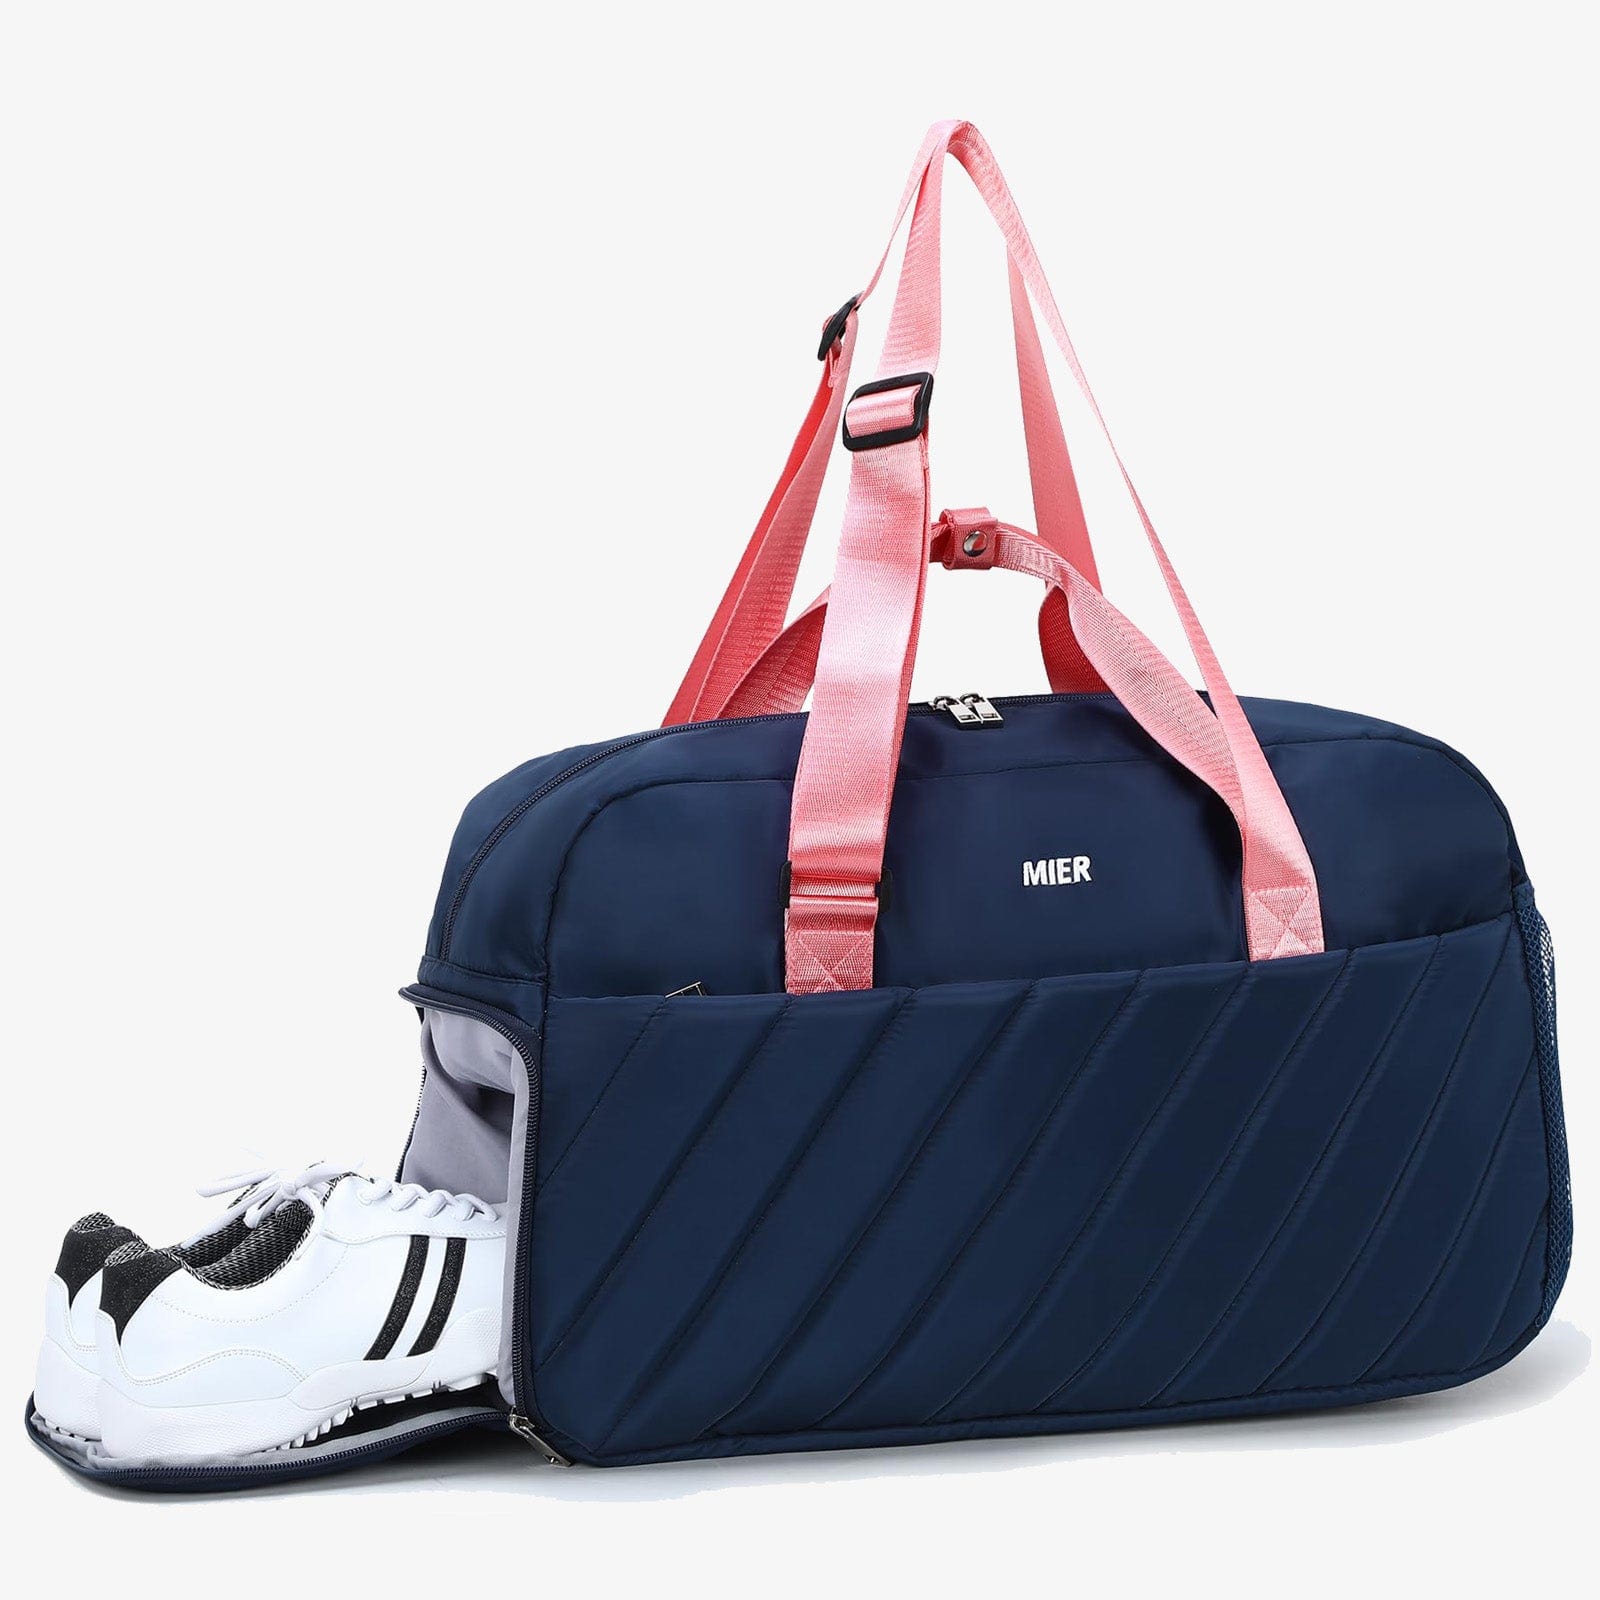 Valise Go Sport - 20 valises pour voyager stylé - Elle